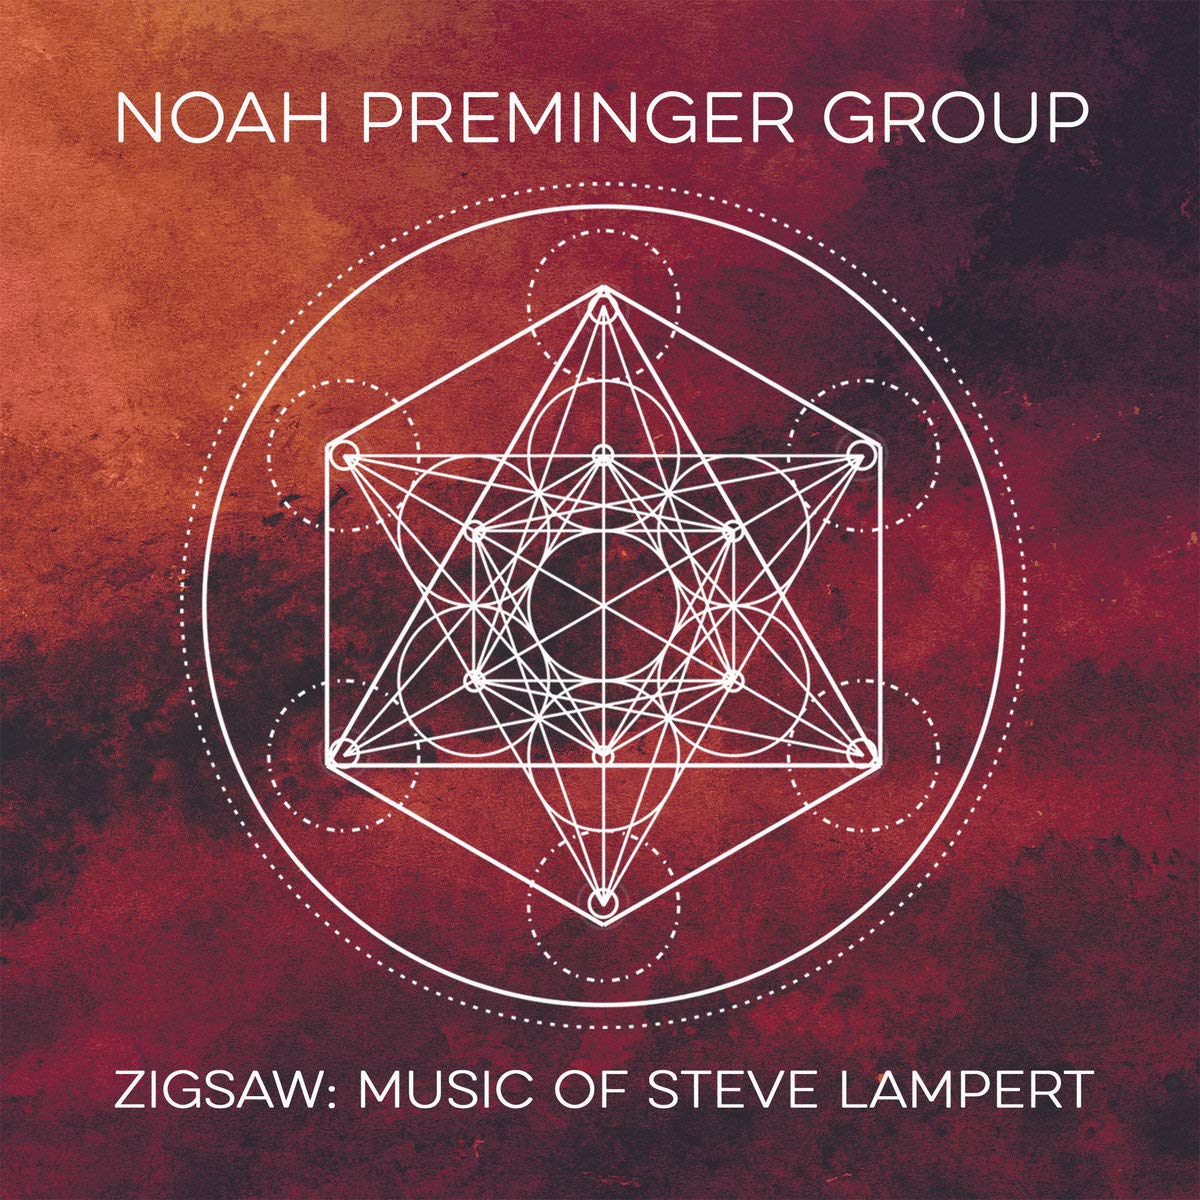 Noah Preminger Group: Zigsaw: Music of Steve Lambert